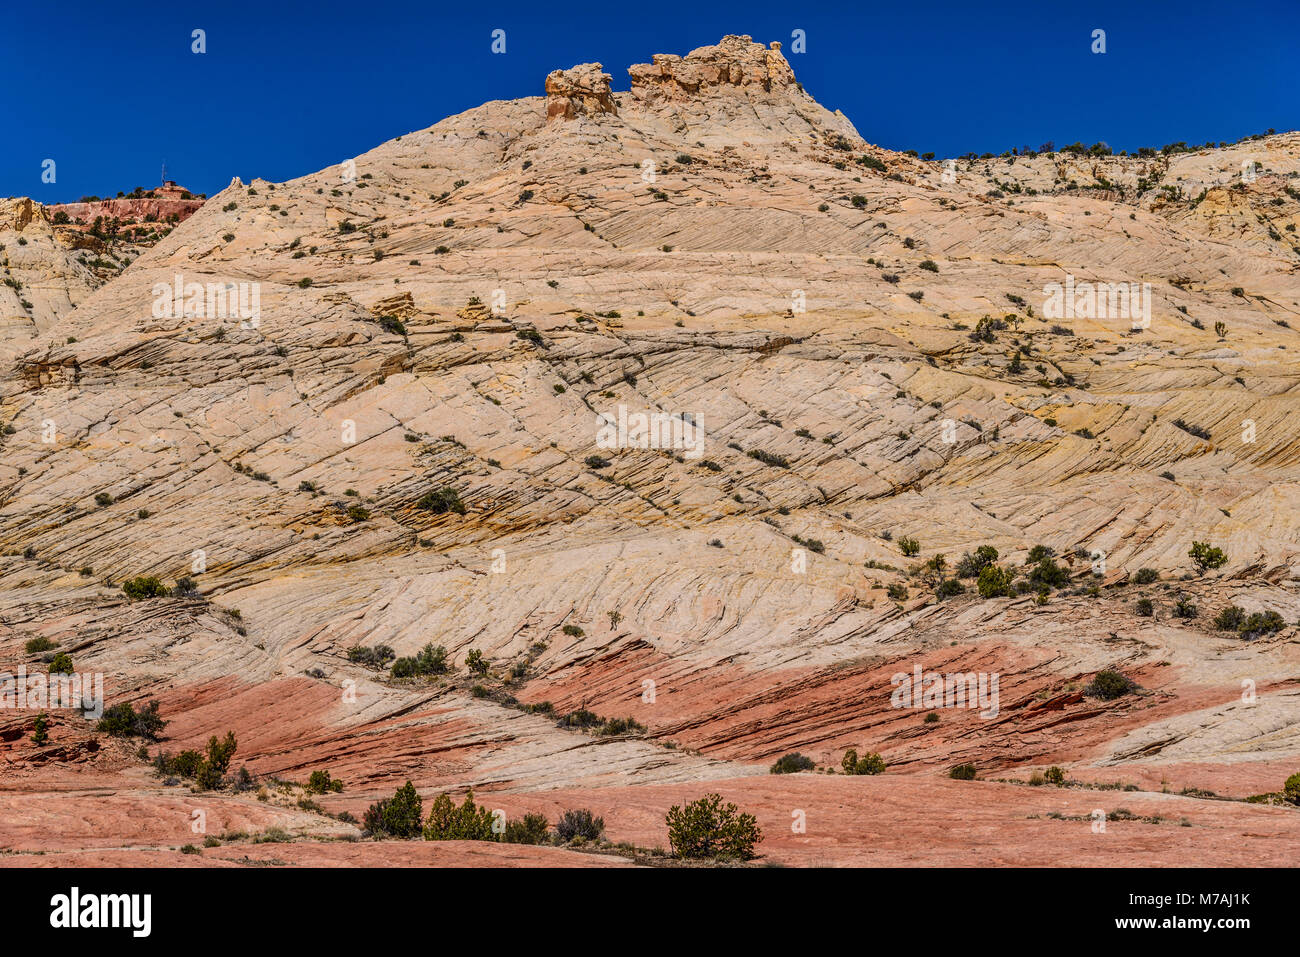 Gli Stati Uniti, Utah, Garfield County, Grand Staircase-Escalante monumento nazionale, Escalante, scenario della Scenic Byway 12 Foto Stock